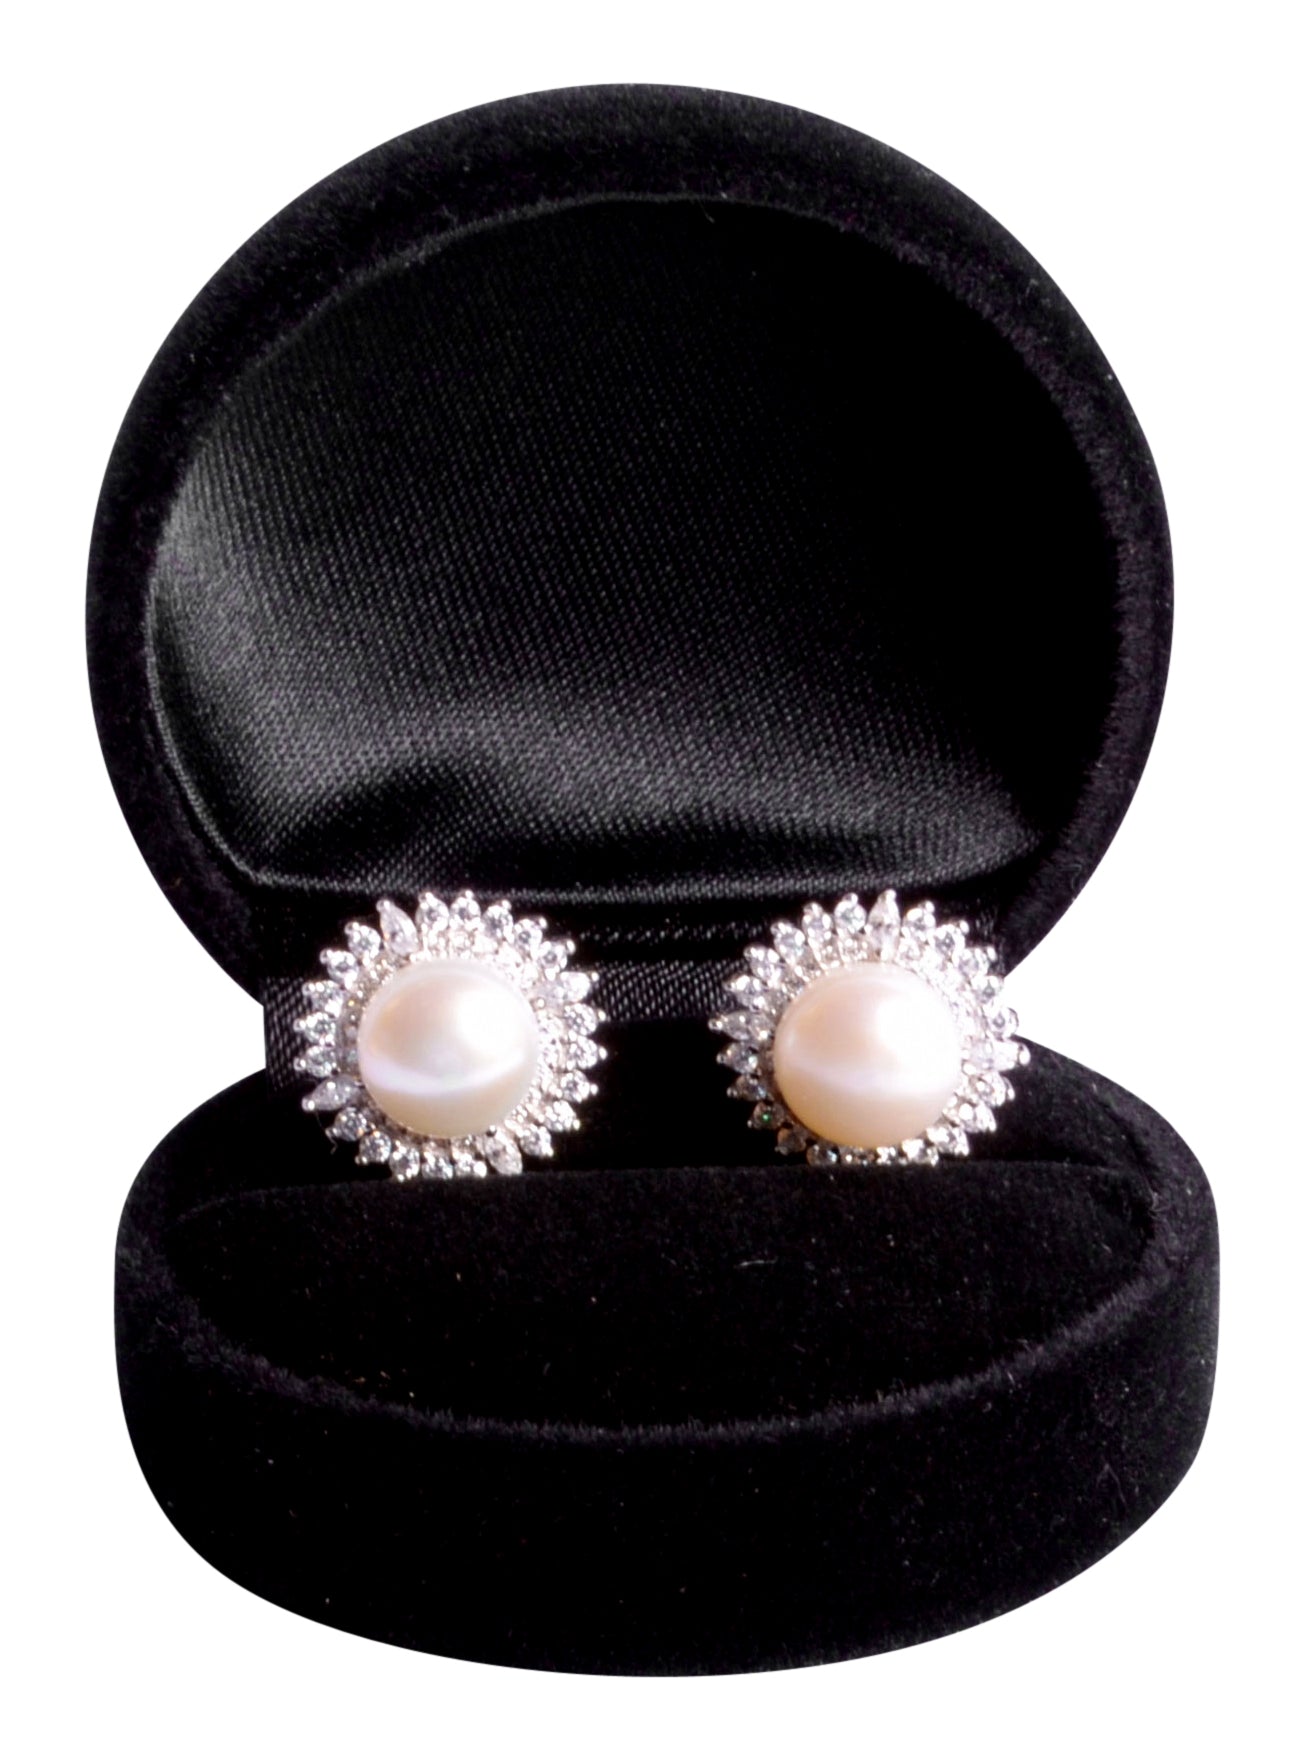 Pearl & Crystal Sunburst Sterling Silver Earrings | SilverAndGold